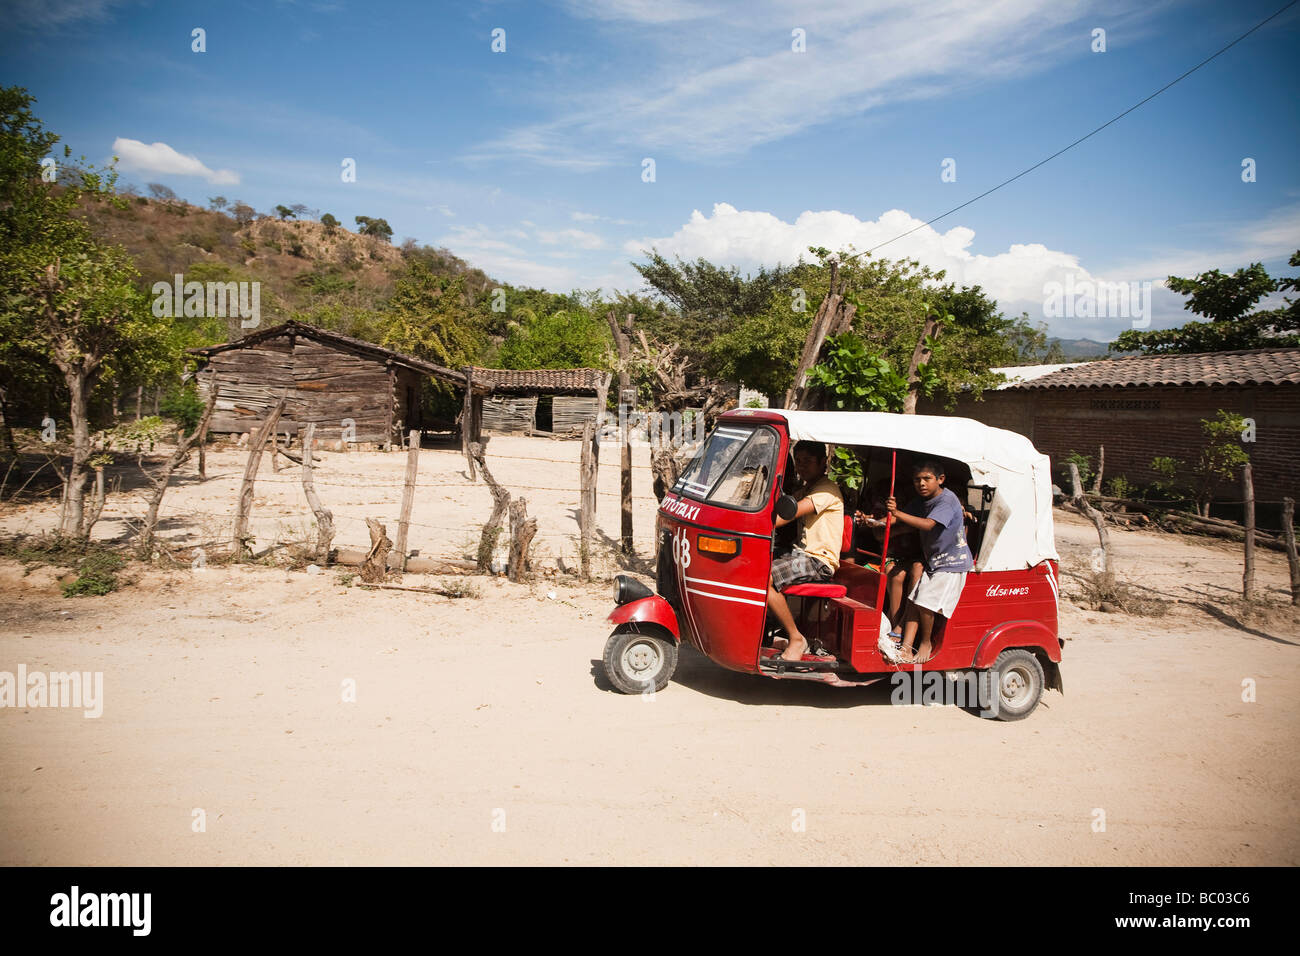 Un mototaxi conduit certains enfants au moyen d'une route non asphaltée dans une communauté à Oaxaca, au Mexique. Banque D'Images